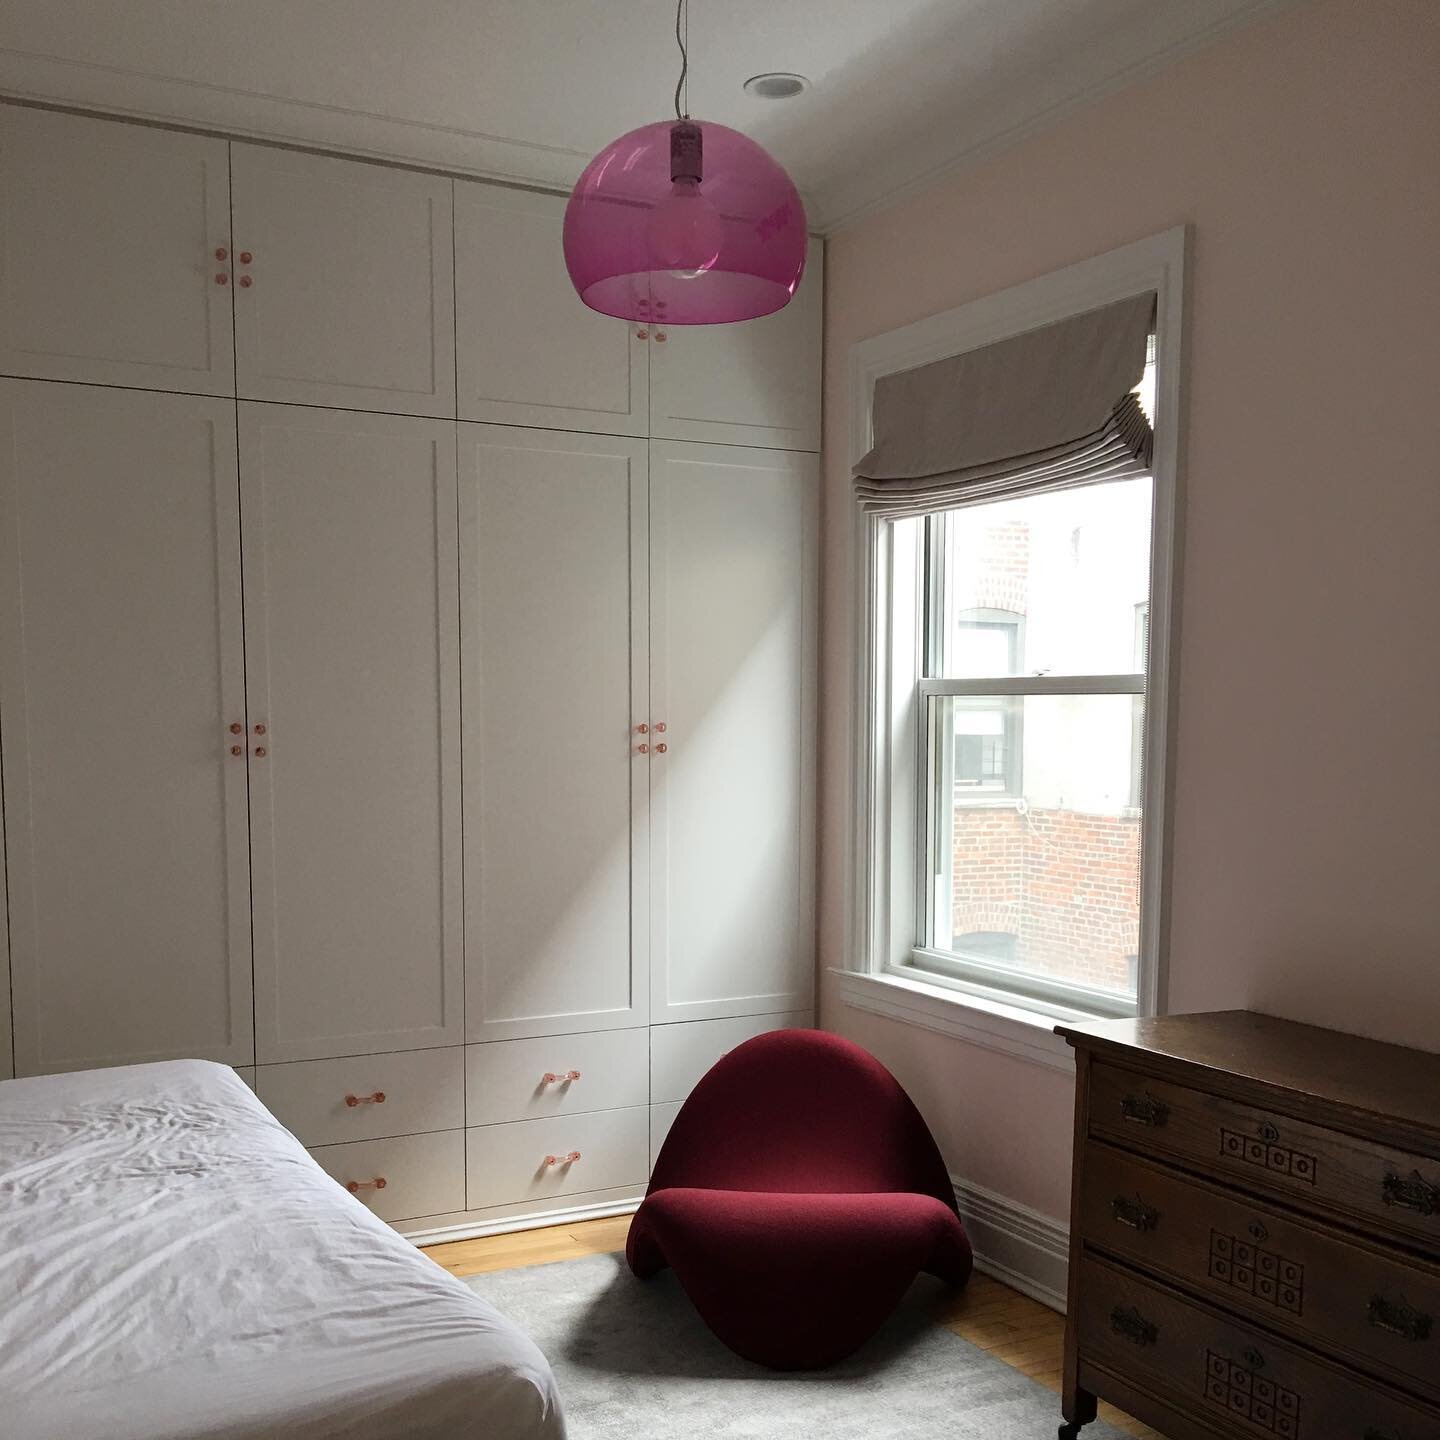 Love a pink bedroom. Swipe for details and before! 
-
-
-
-
-
-

#designforlife #designworld #interiordesignersofinstagram #serenedesign #sustainabledesign #archstagram #luxurioushomes #minimalistdesign #worldofinteriors #luxuryarchitecture #inspirat